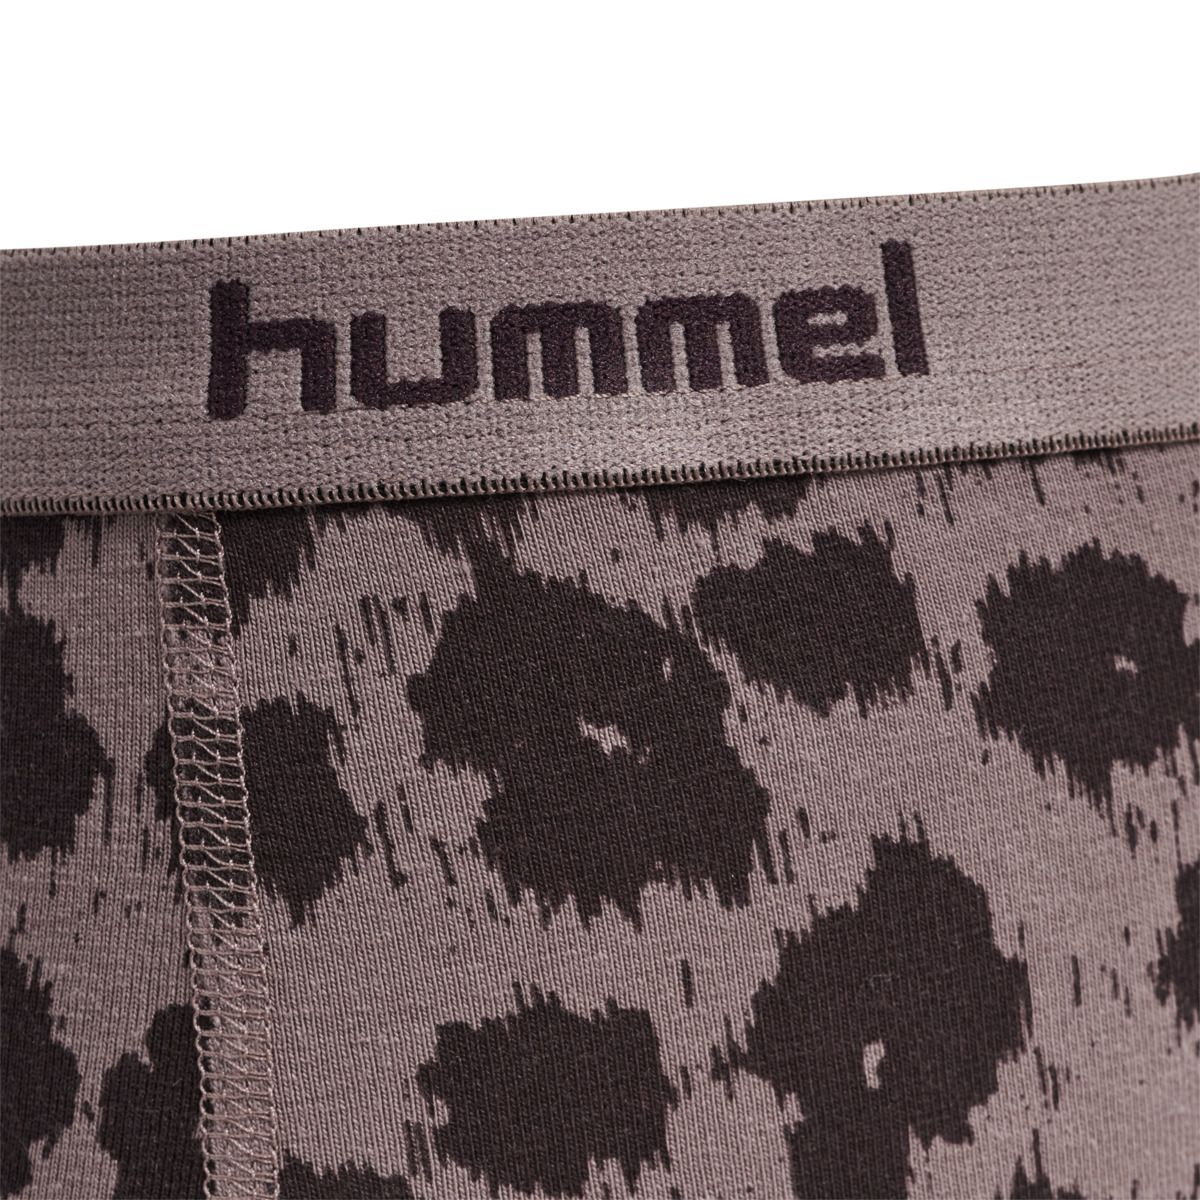 Hummel - hmlCAROLINA, Kinder Hipster 2-Pack